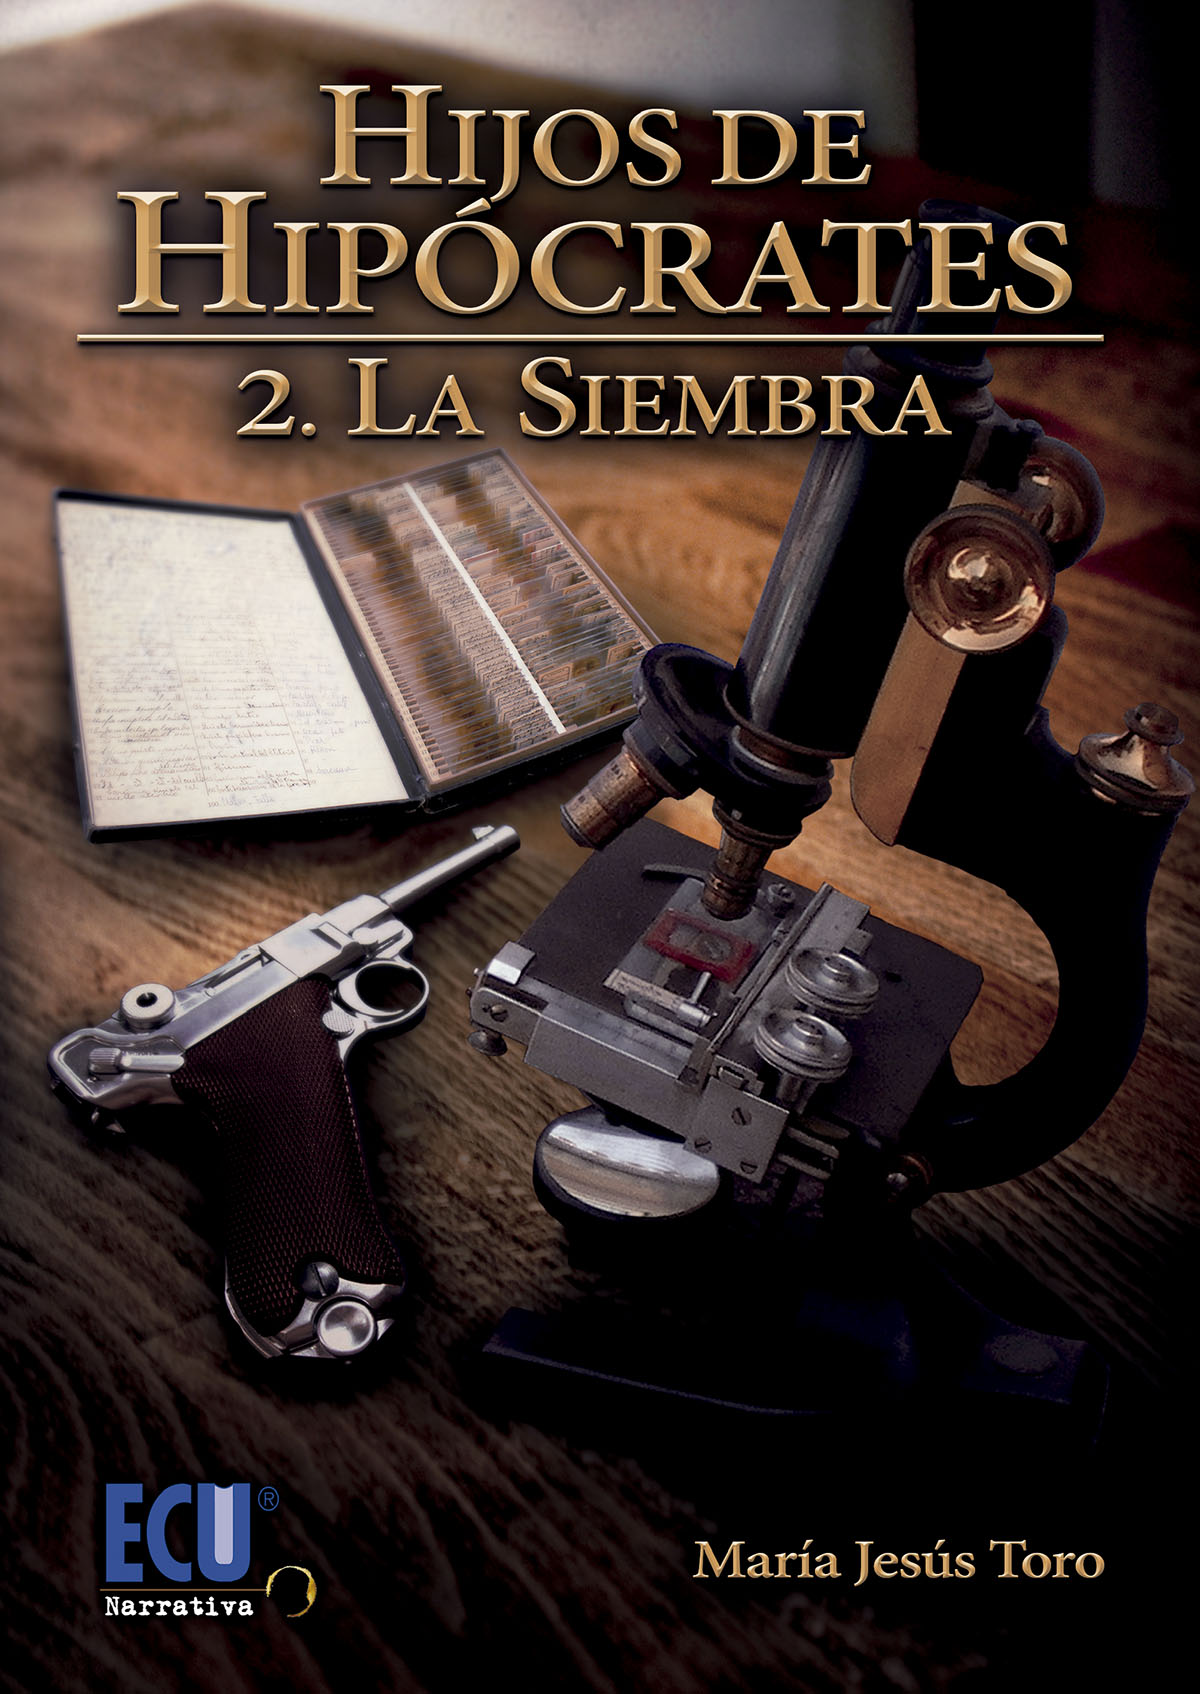 HIJOS DE HIPÓCRATES<BR>
2. LA SIEMBRA